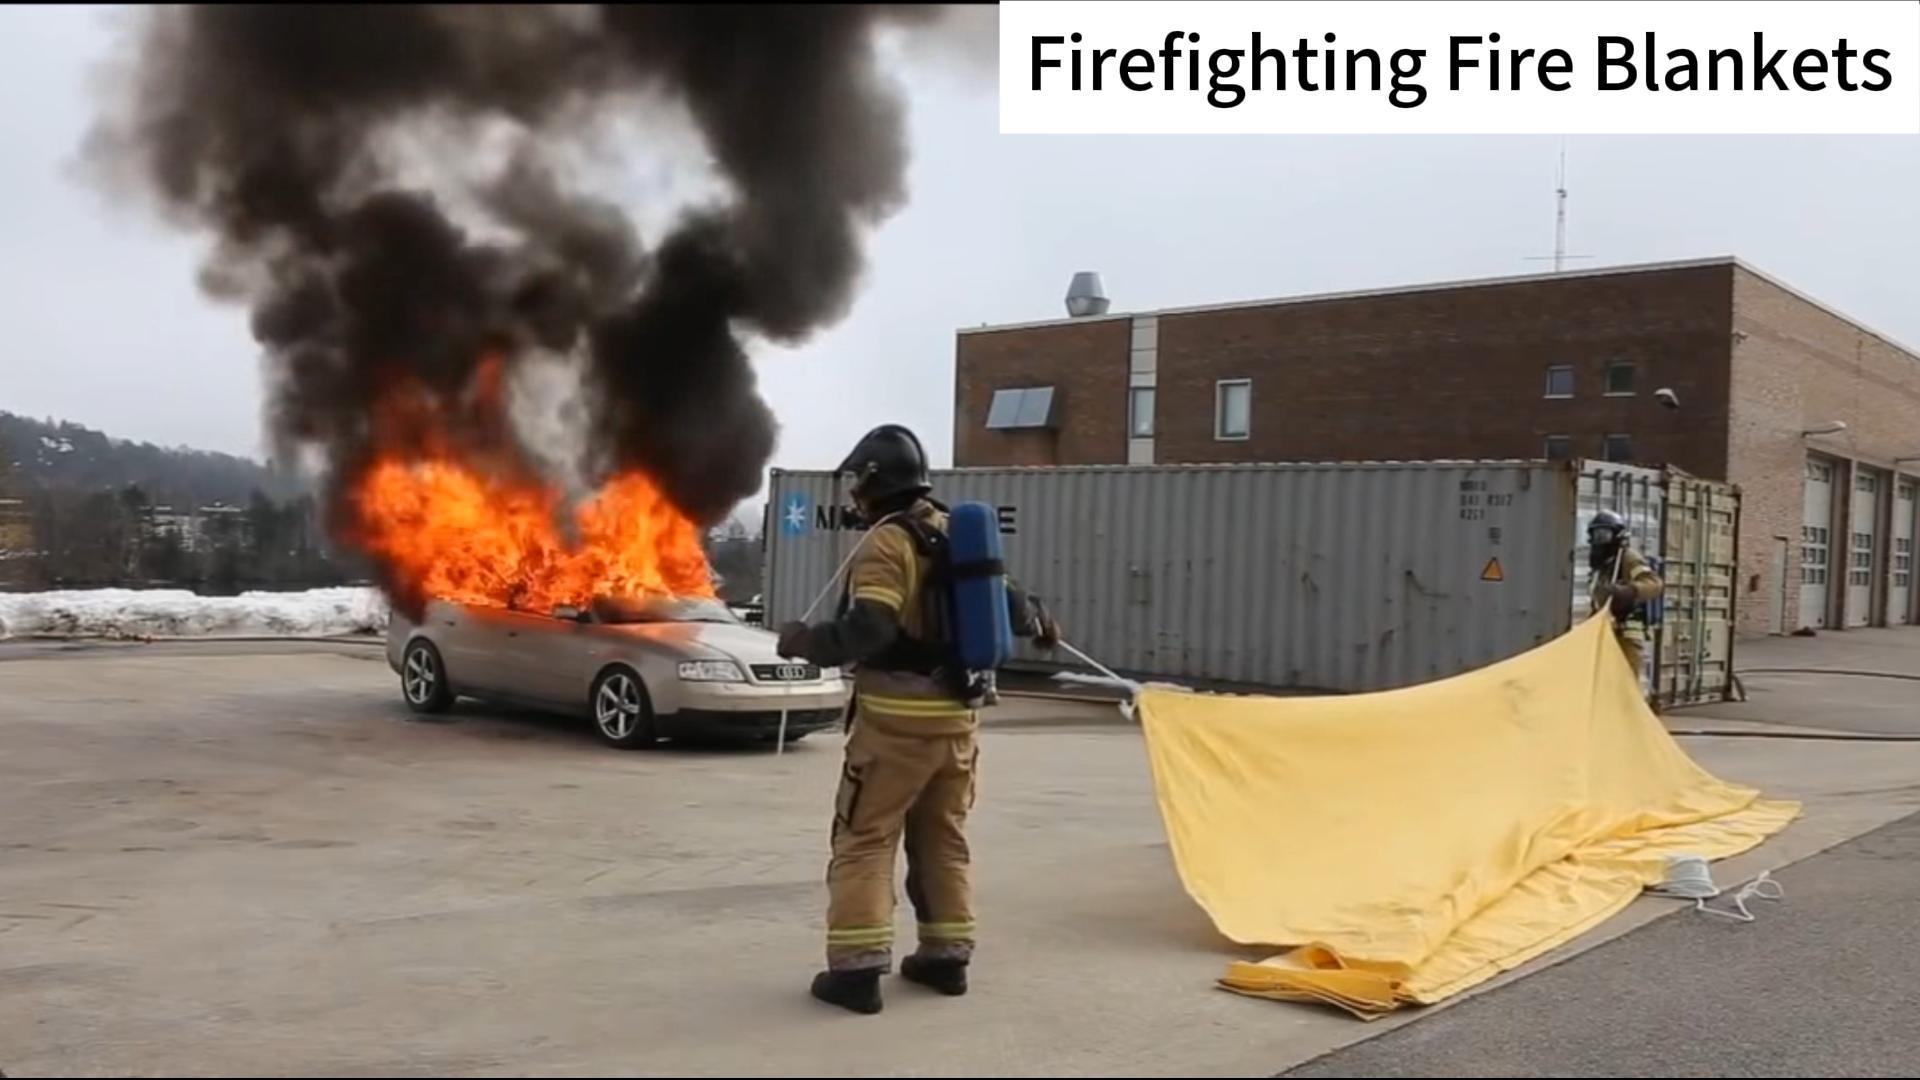 Prodotti di coperta per estinguere incendi